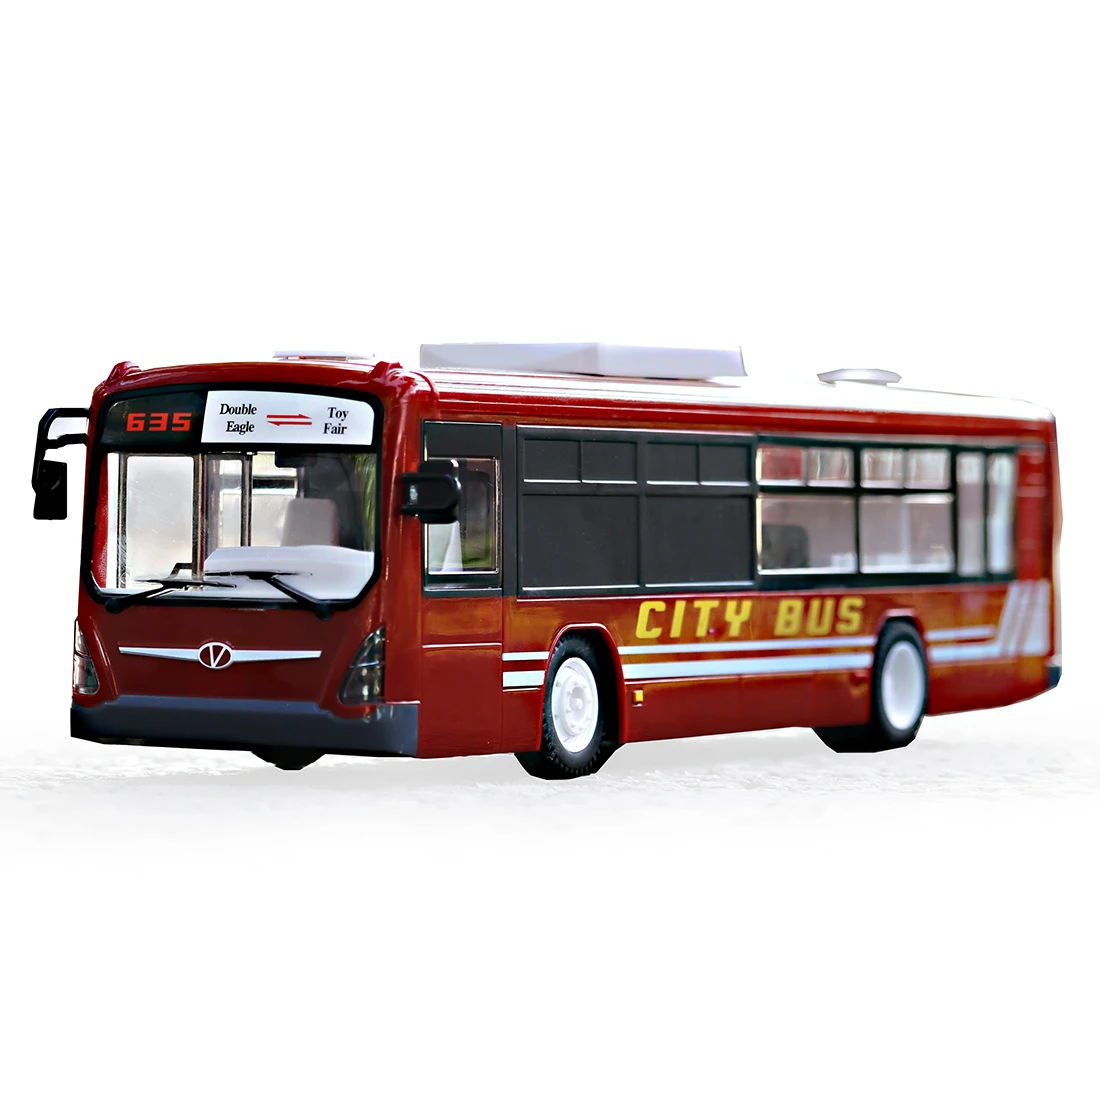 2,4 G RC-Bil, Bus City Express Model RC Toy Bil Med Realistisk Lys Og Lyd - Rød